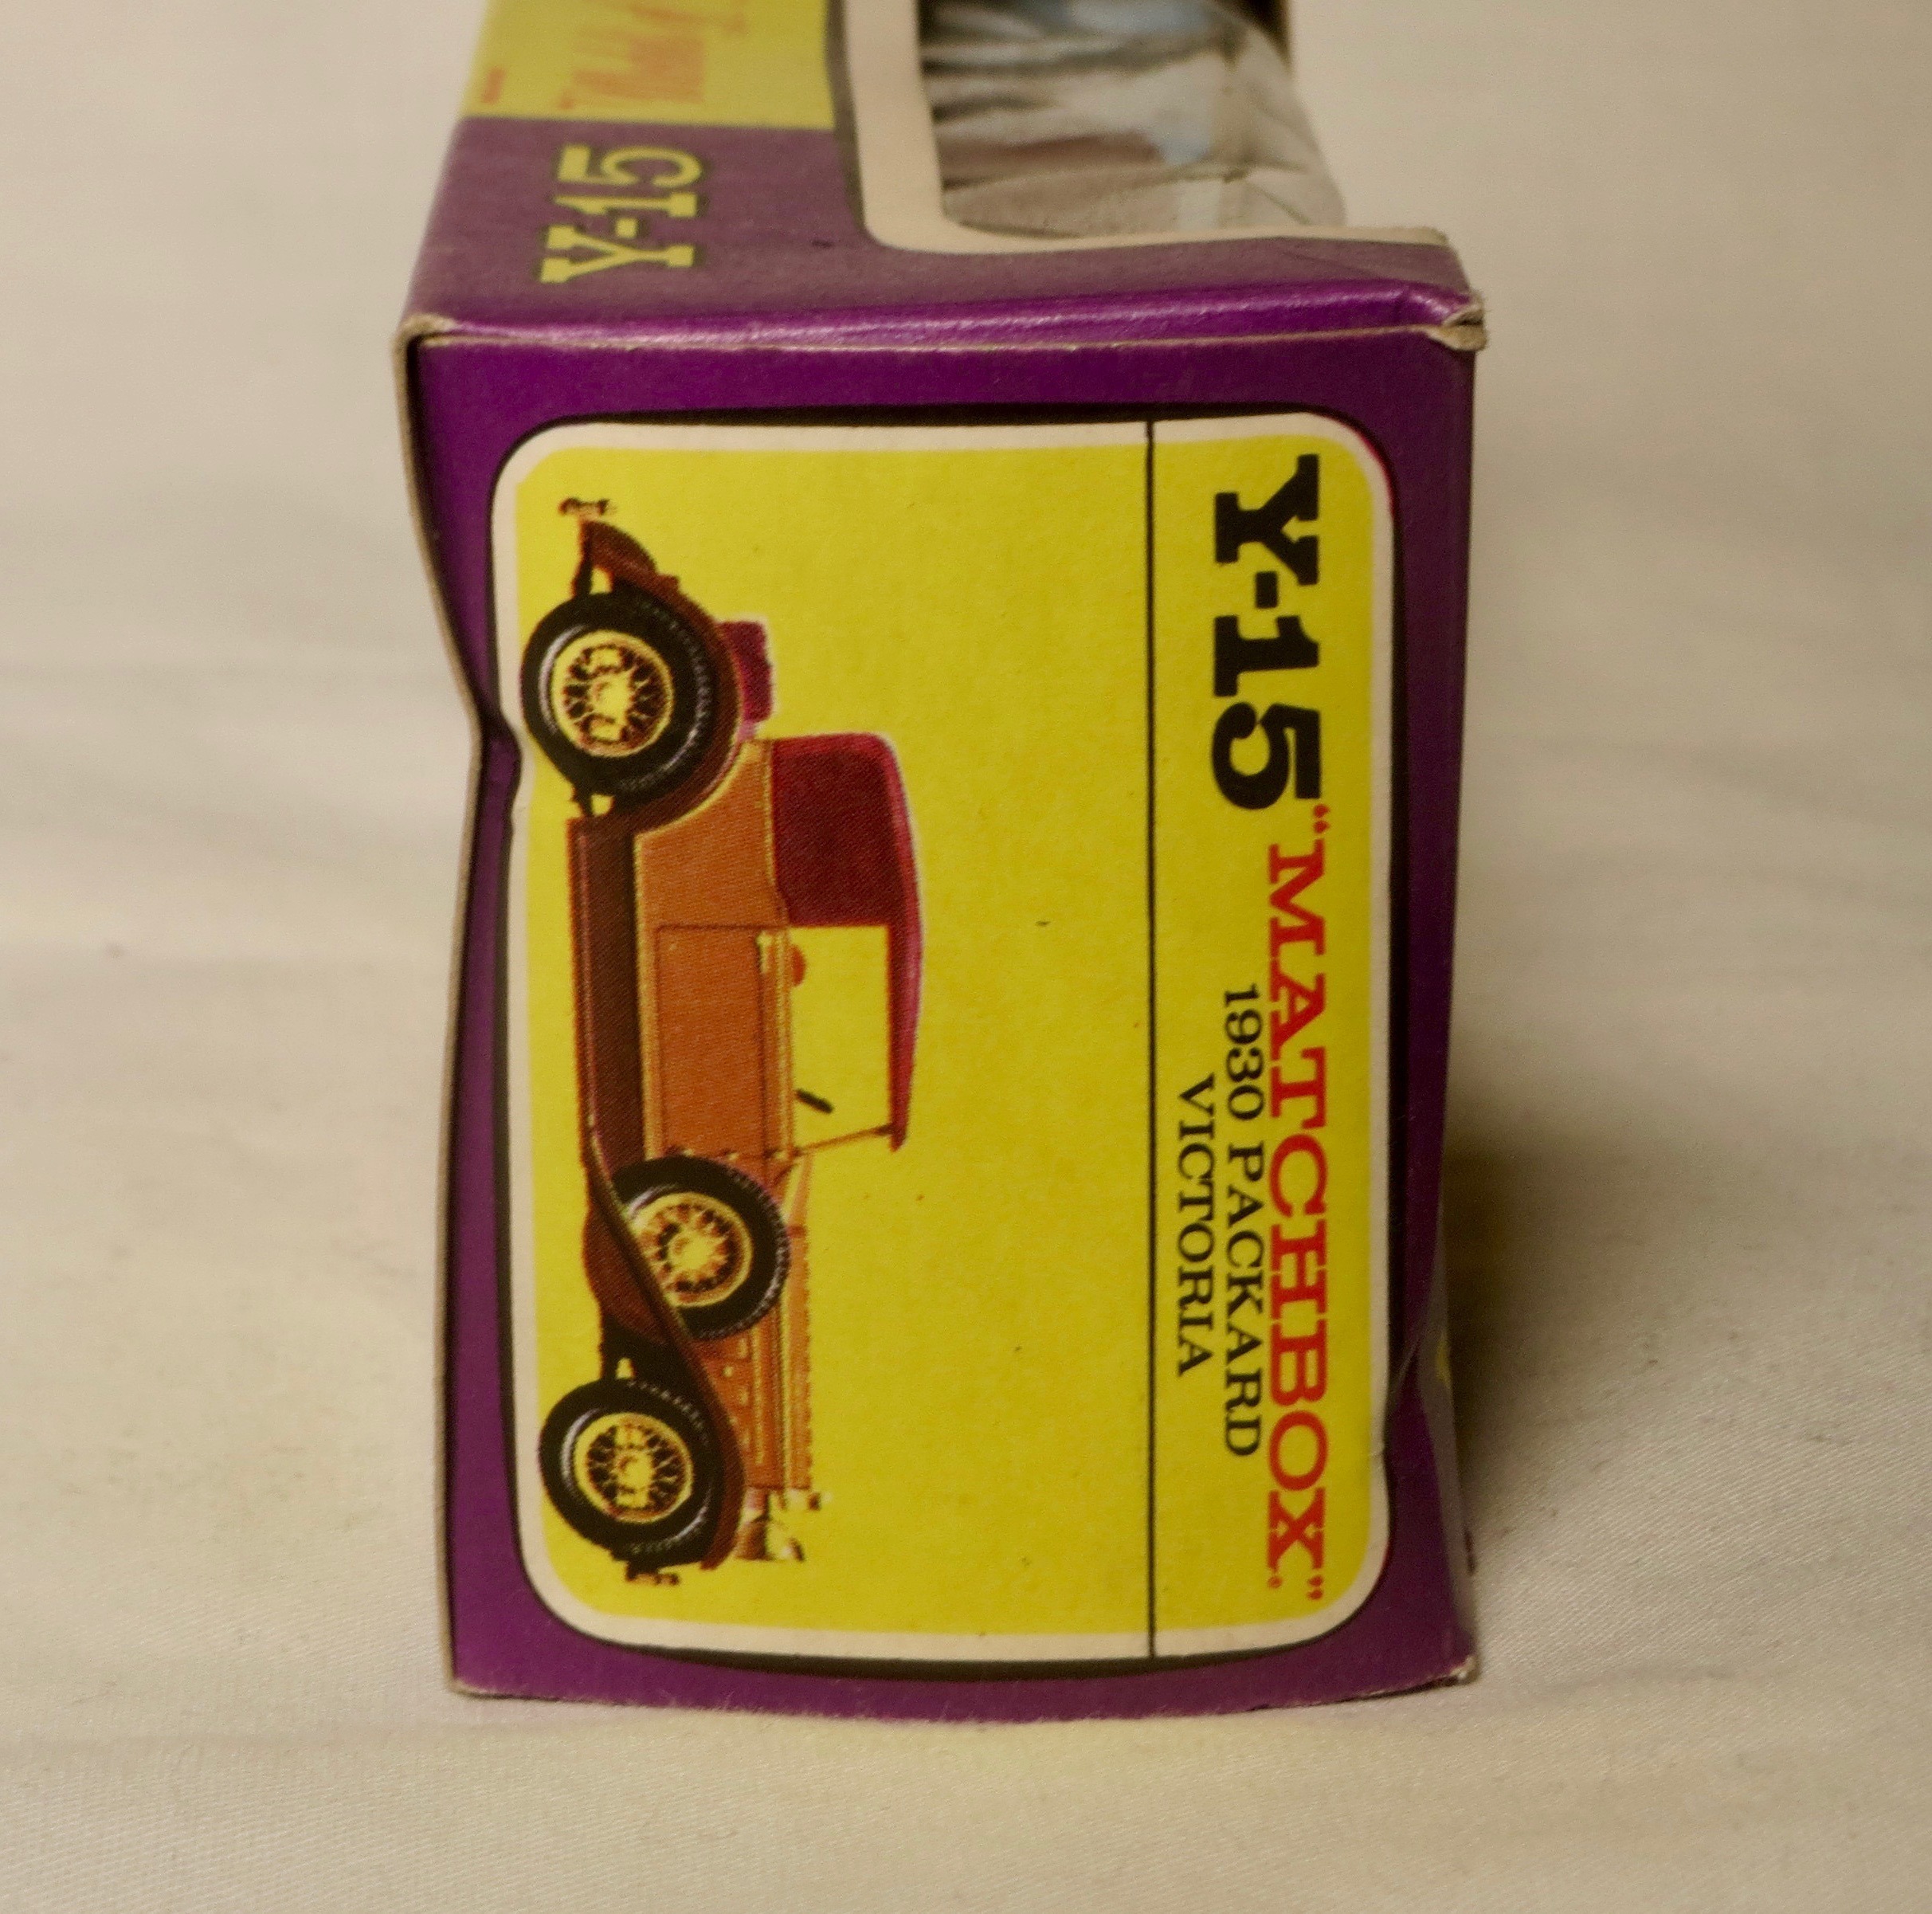 Repro box Matchbox moy nº 15 Packard victoria blisterbox 